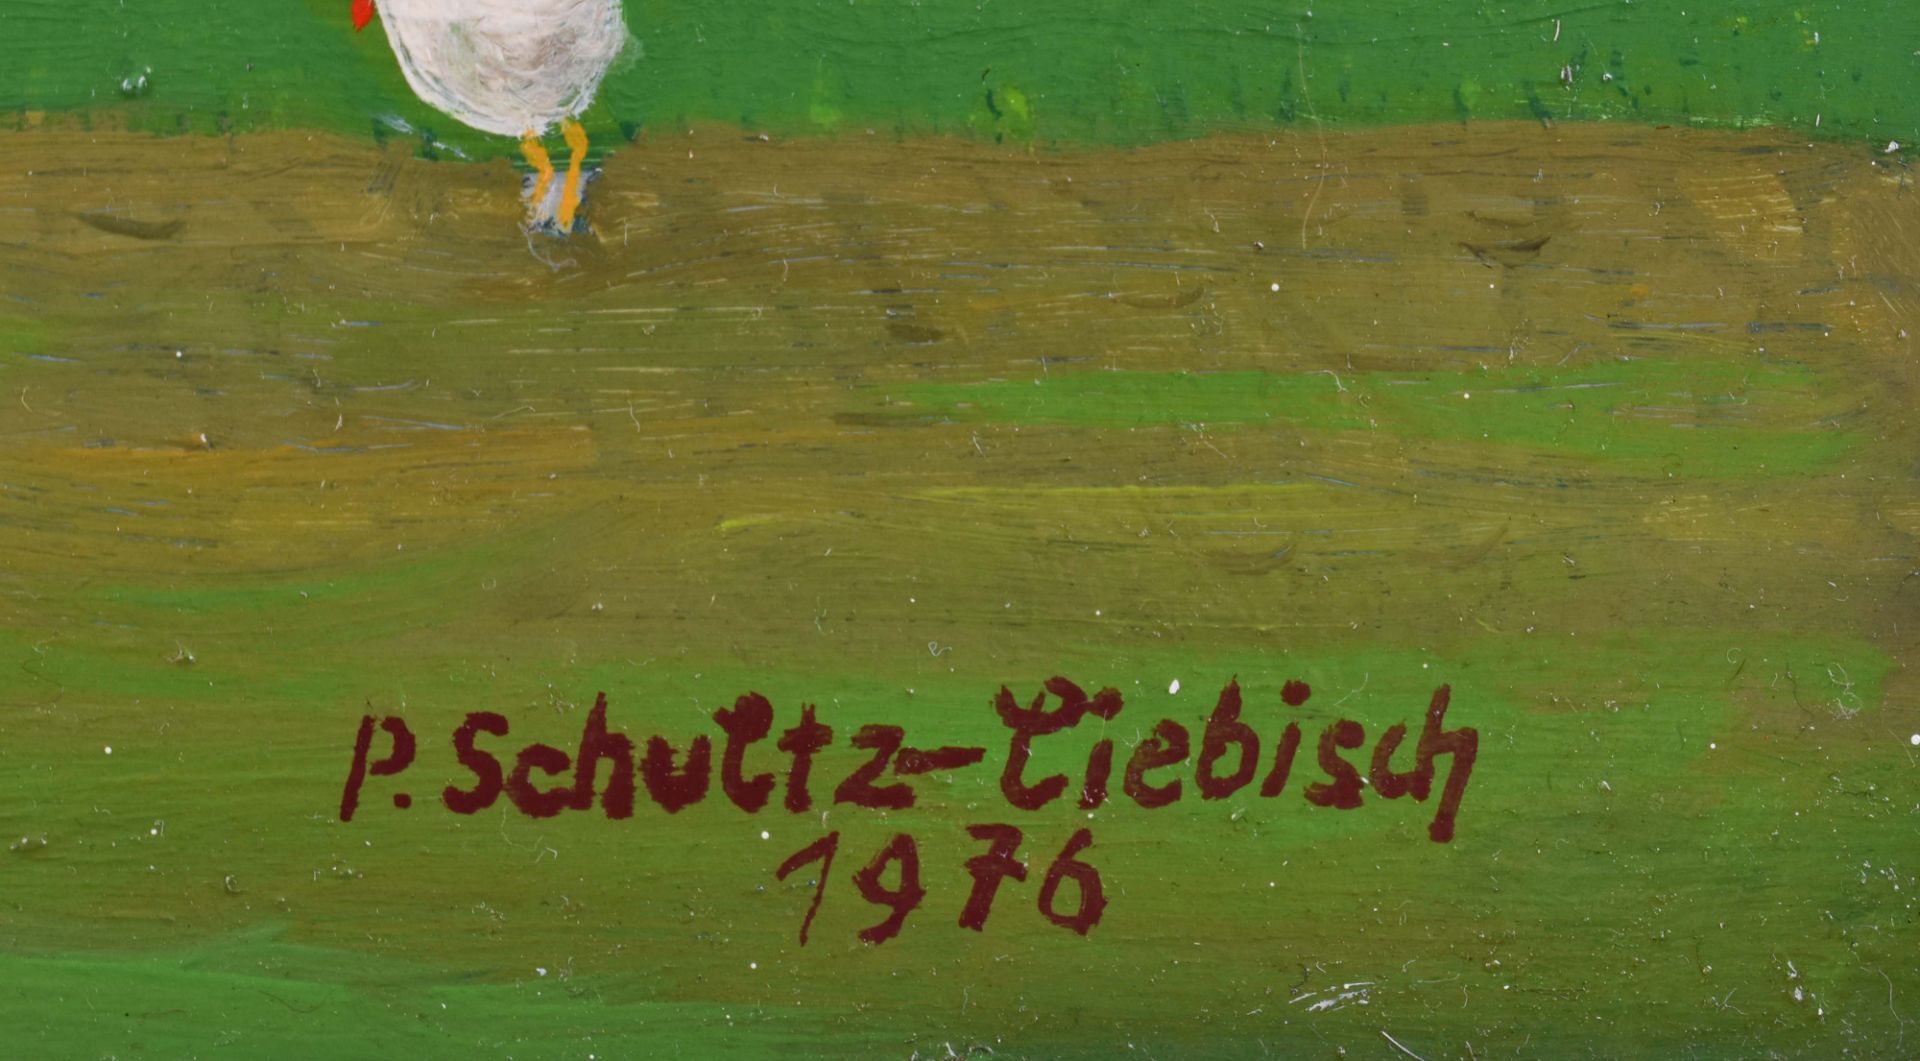 Paul SCHULTZ-LIEBISCH (1905-1996)"Gästehaus in Pankow"painting oil / hardboard, 33 cm x 43.5 cm, - Bild 6 aus 7